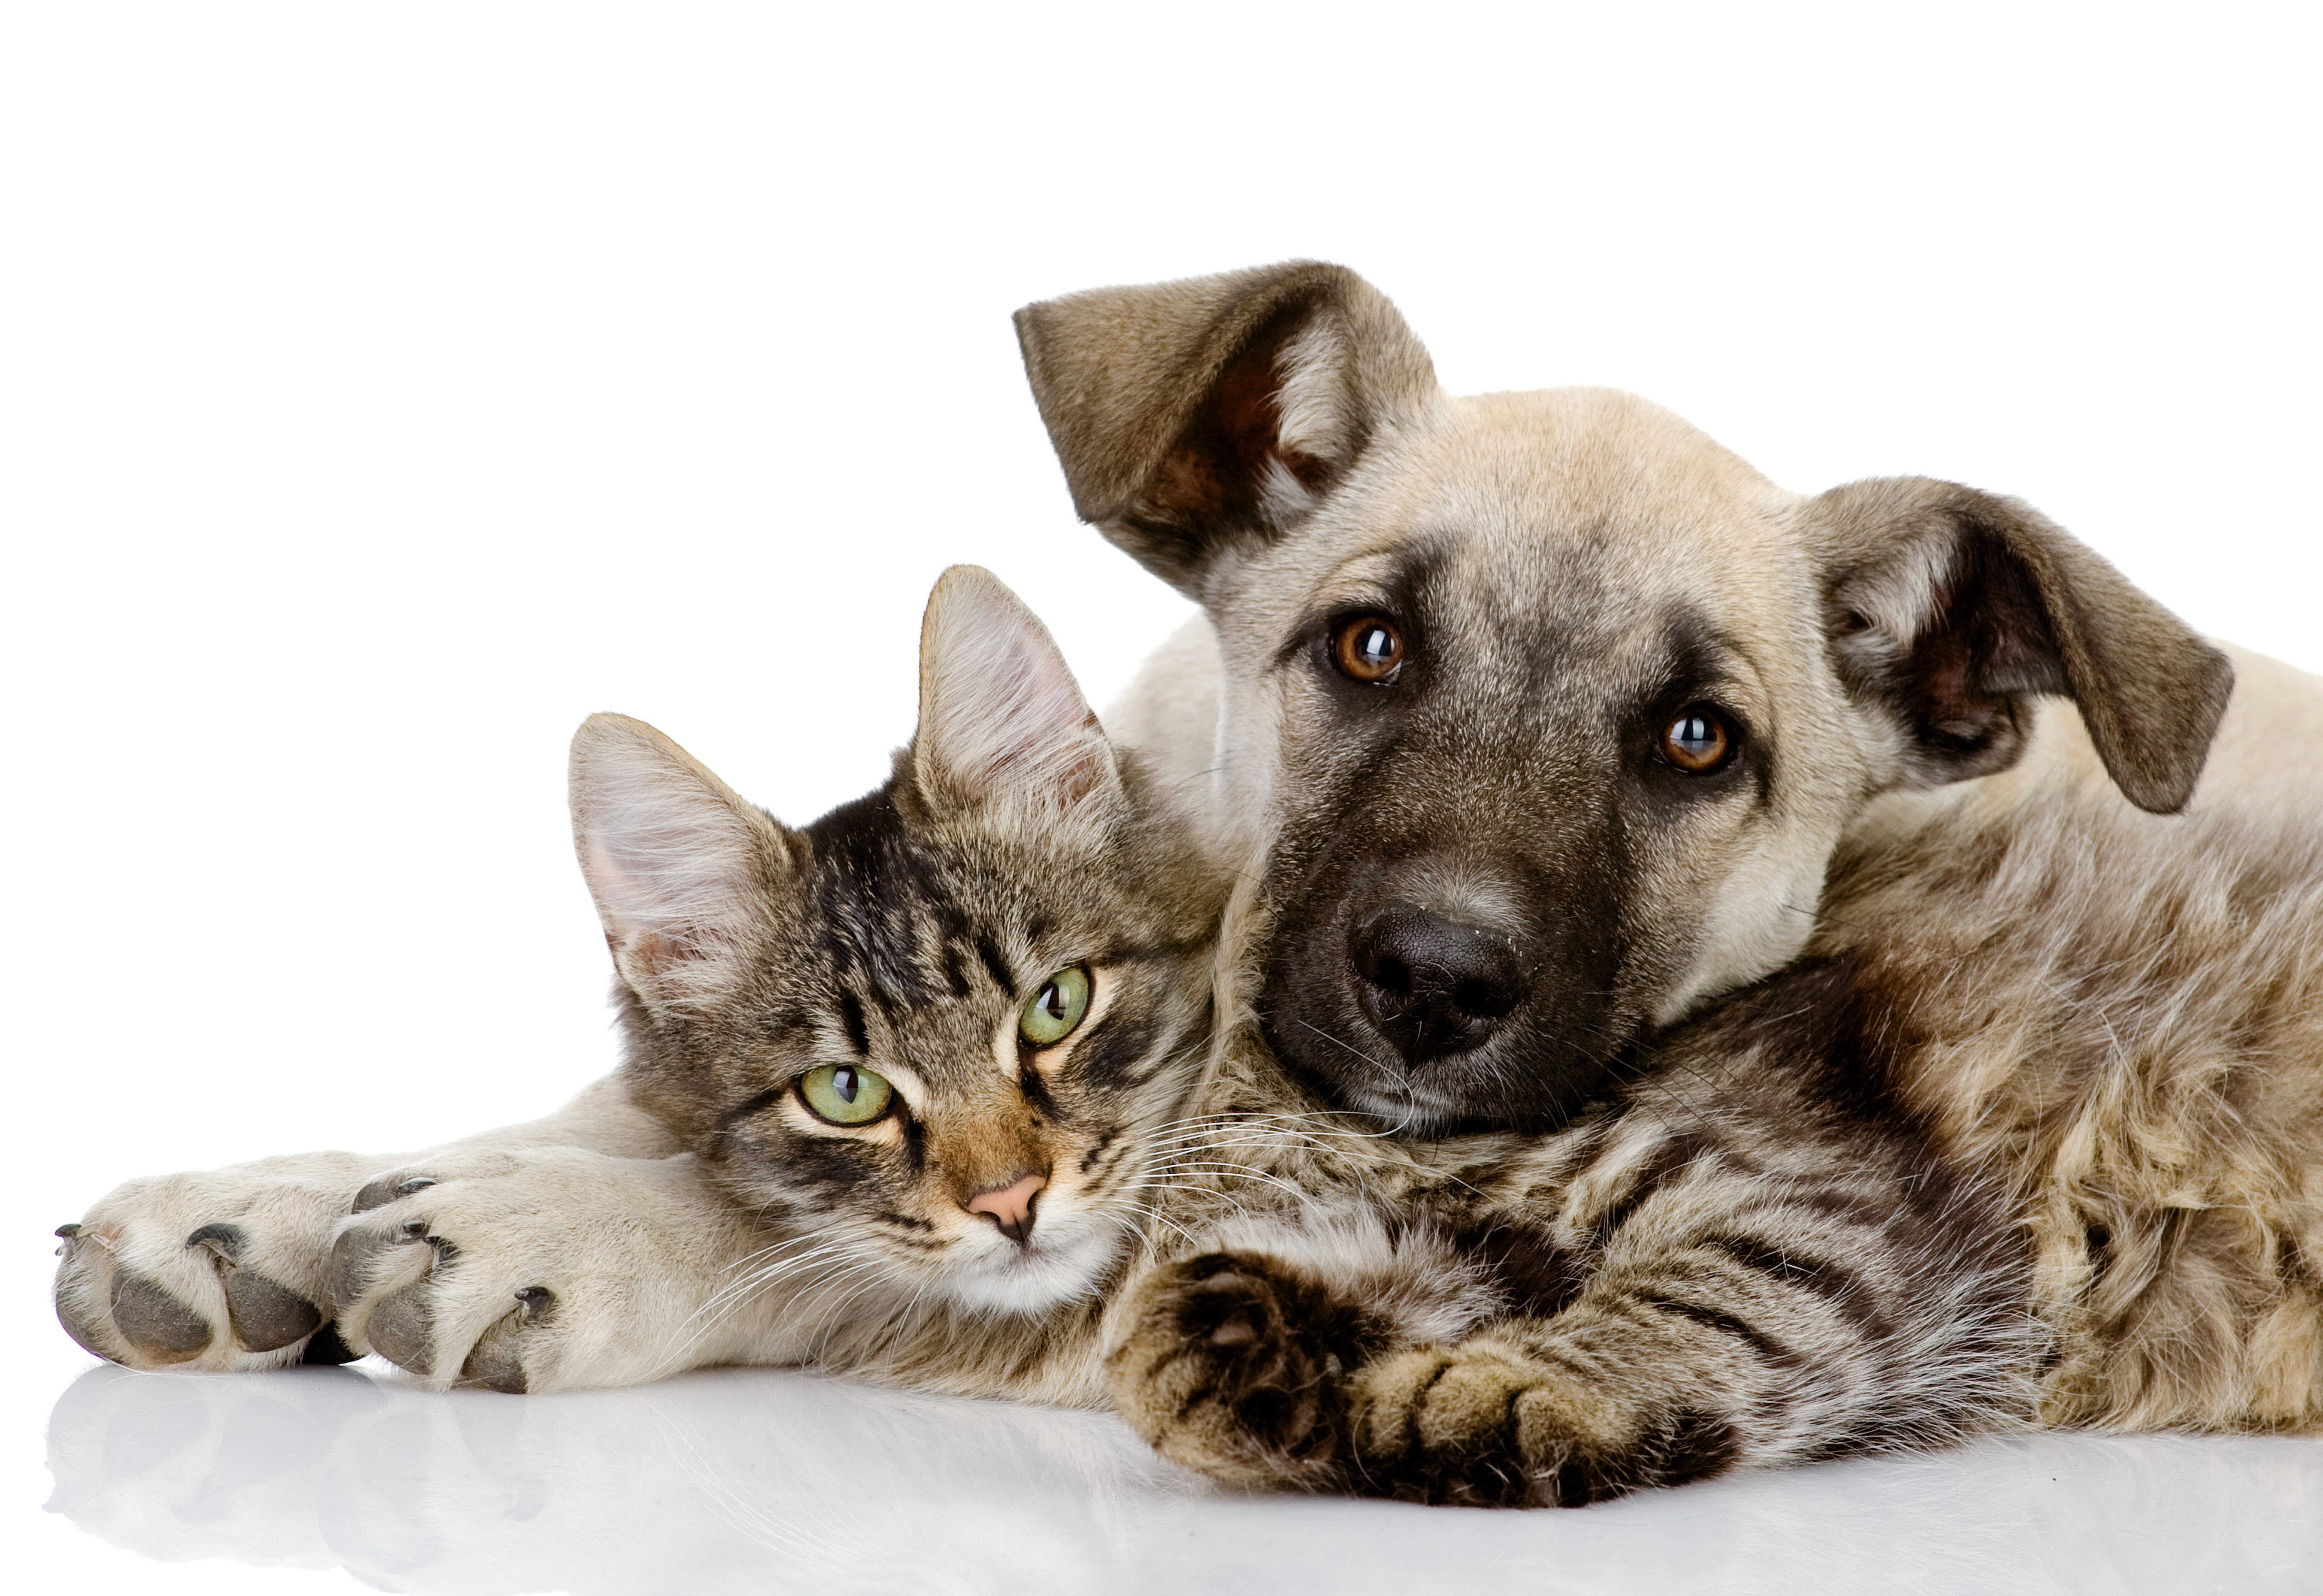 Животные породы кошек и собак. Домашние животные. Собака. Домашние животные кошки и собаки. Кошка и собака на белом фоне.